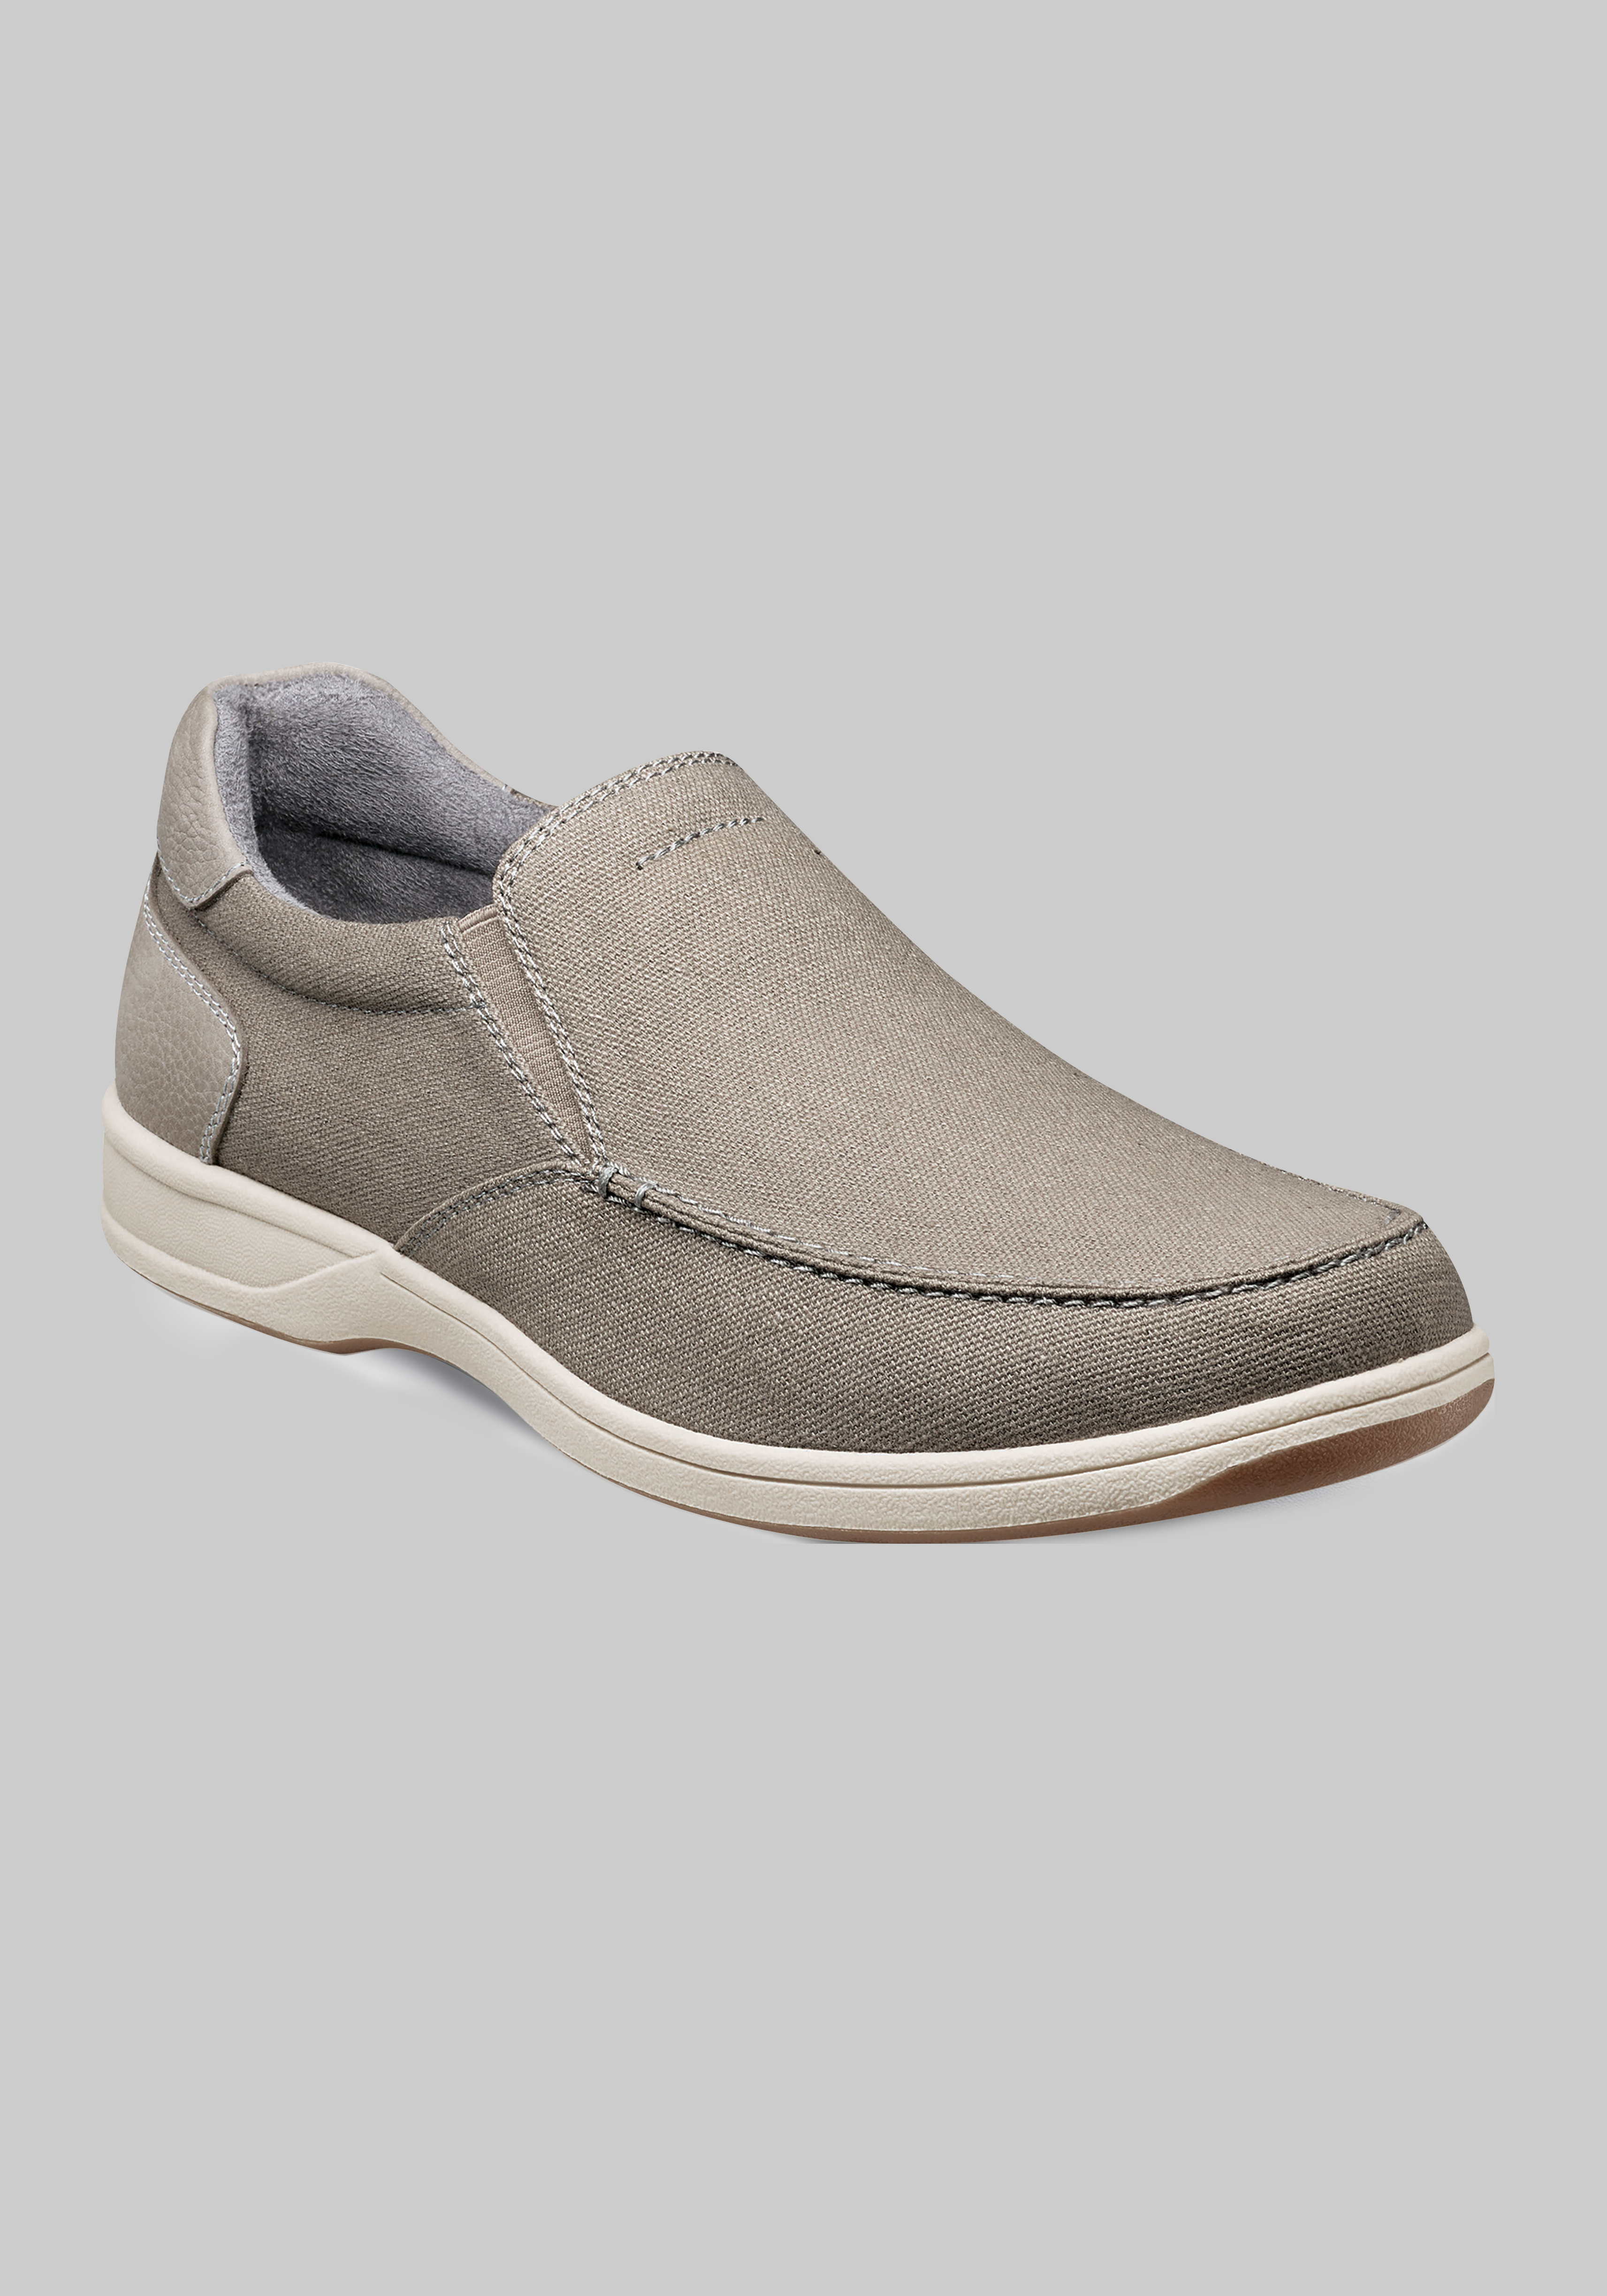 Men's Shoes | Shop Men's Footwear | JoS. A. Bank Clothiers